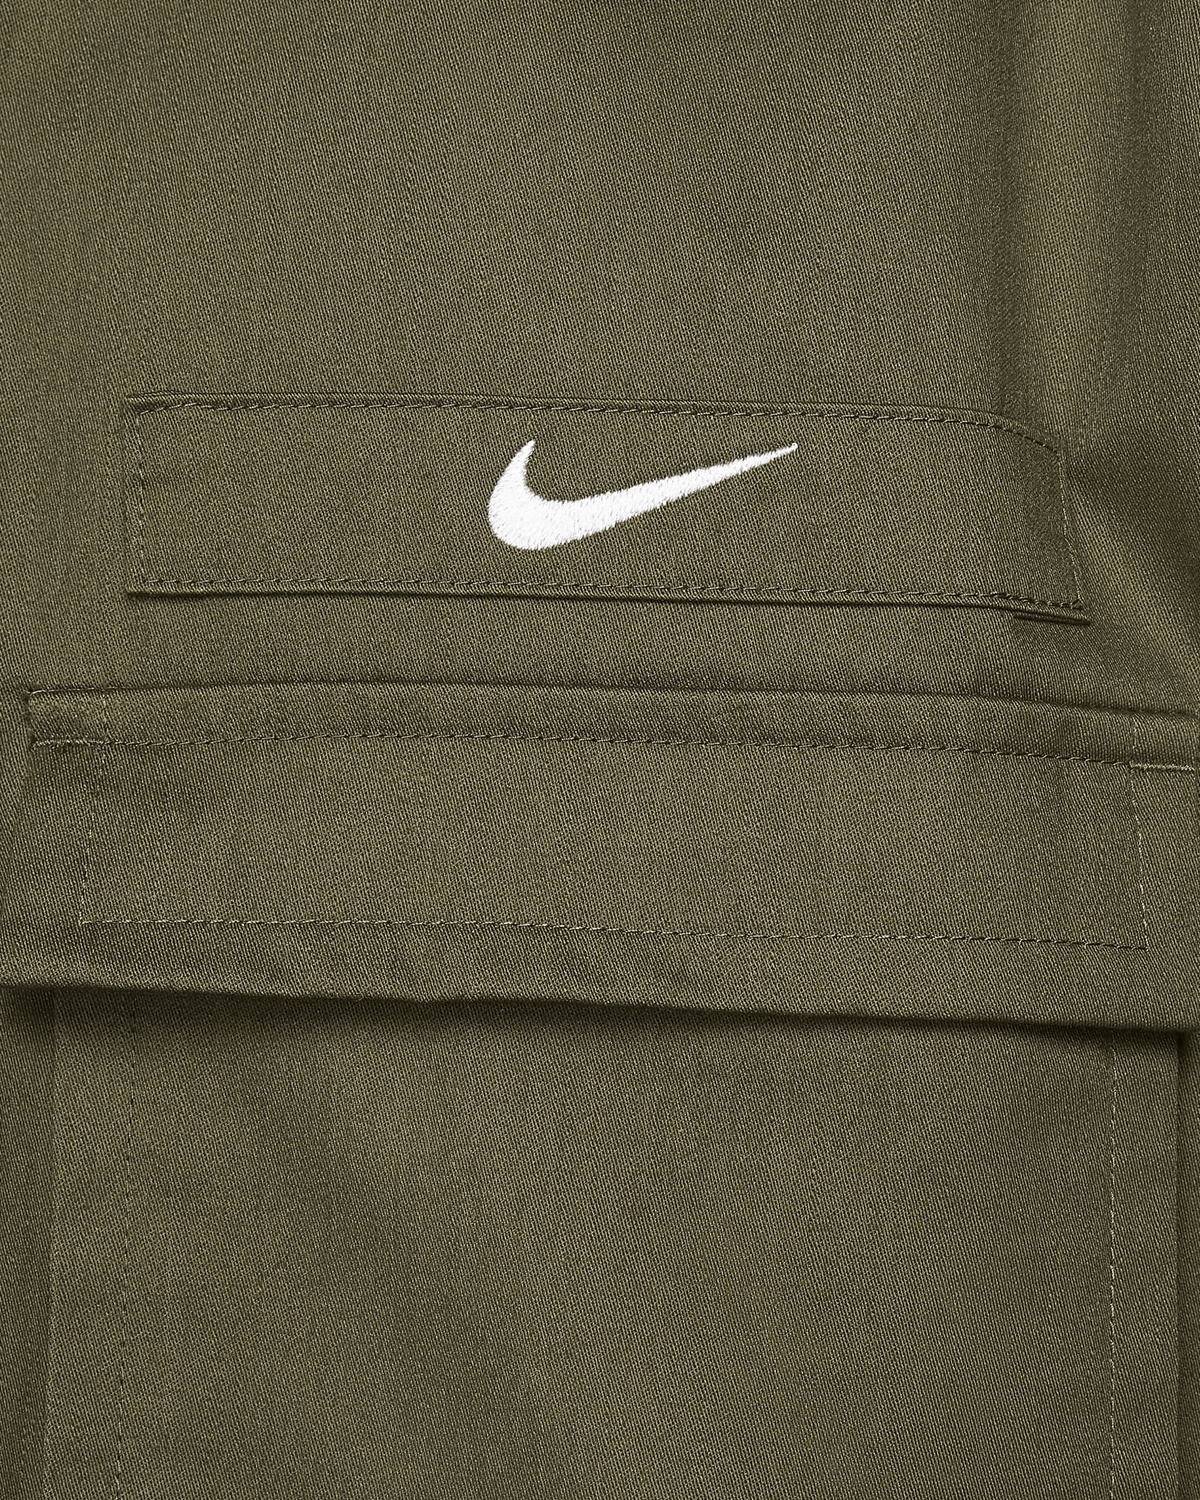 Nike Swoosh Woven Utility Jacket in Black